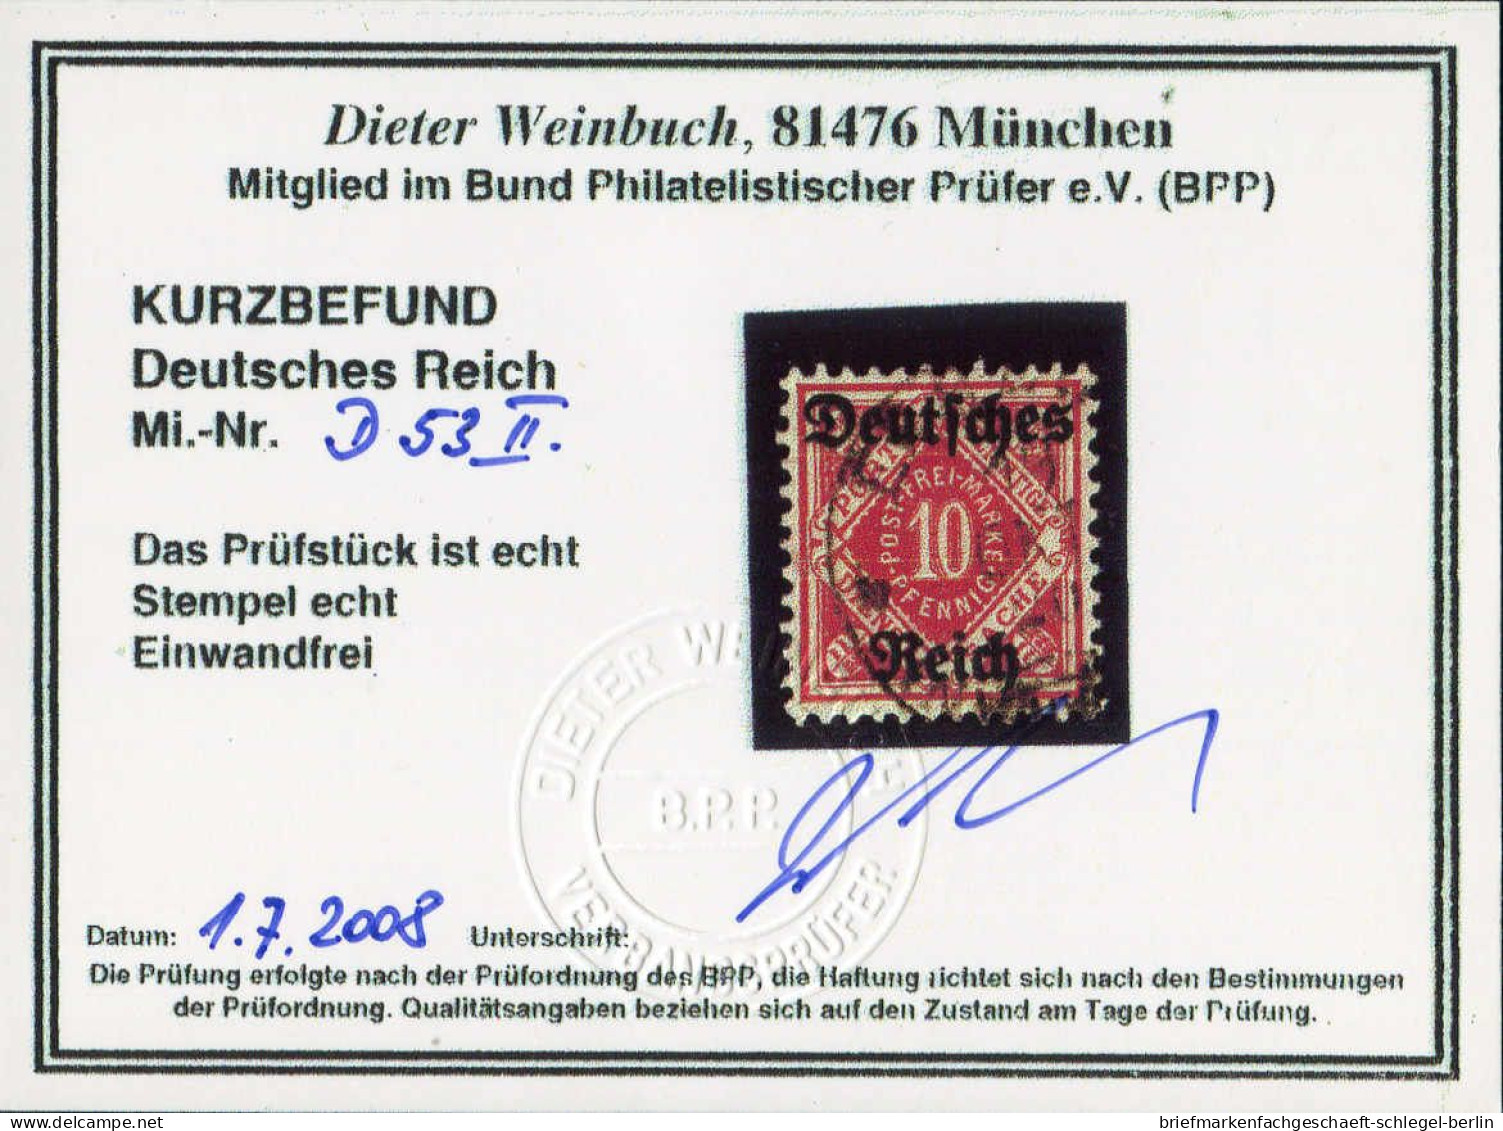 Deutsches Reich, 1920, 53 II, Gestempelt - Dienstzegels